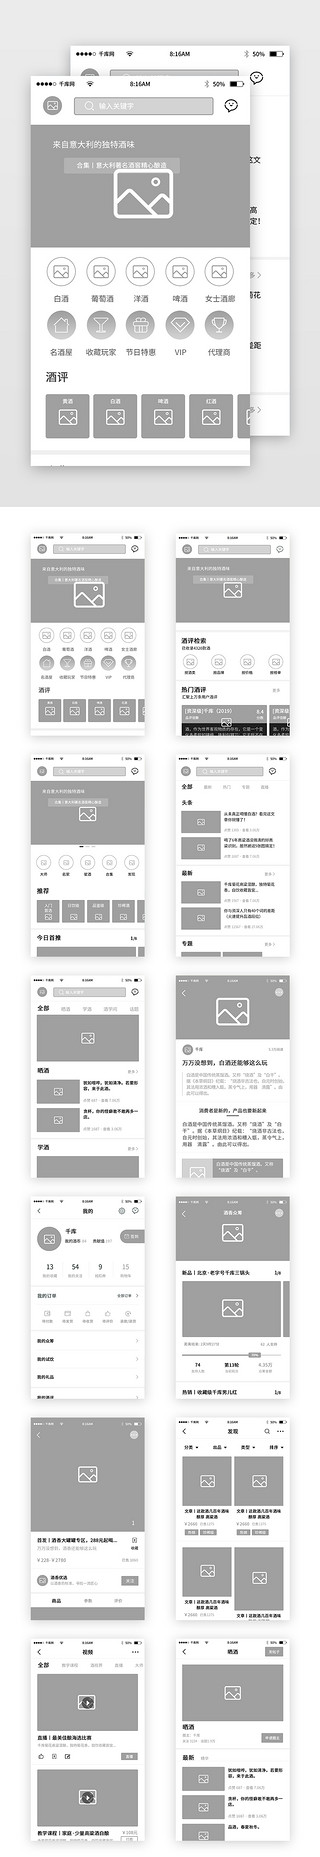 发起流程UI设计素材_酒香美酒app流程原型图